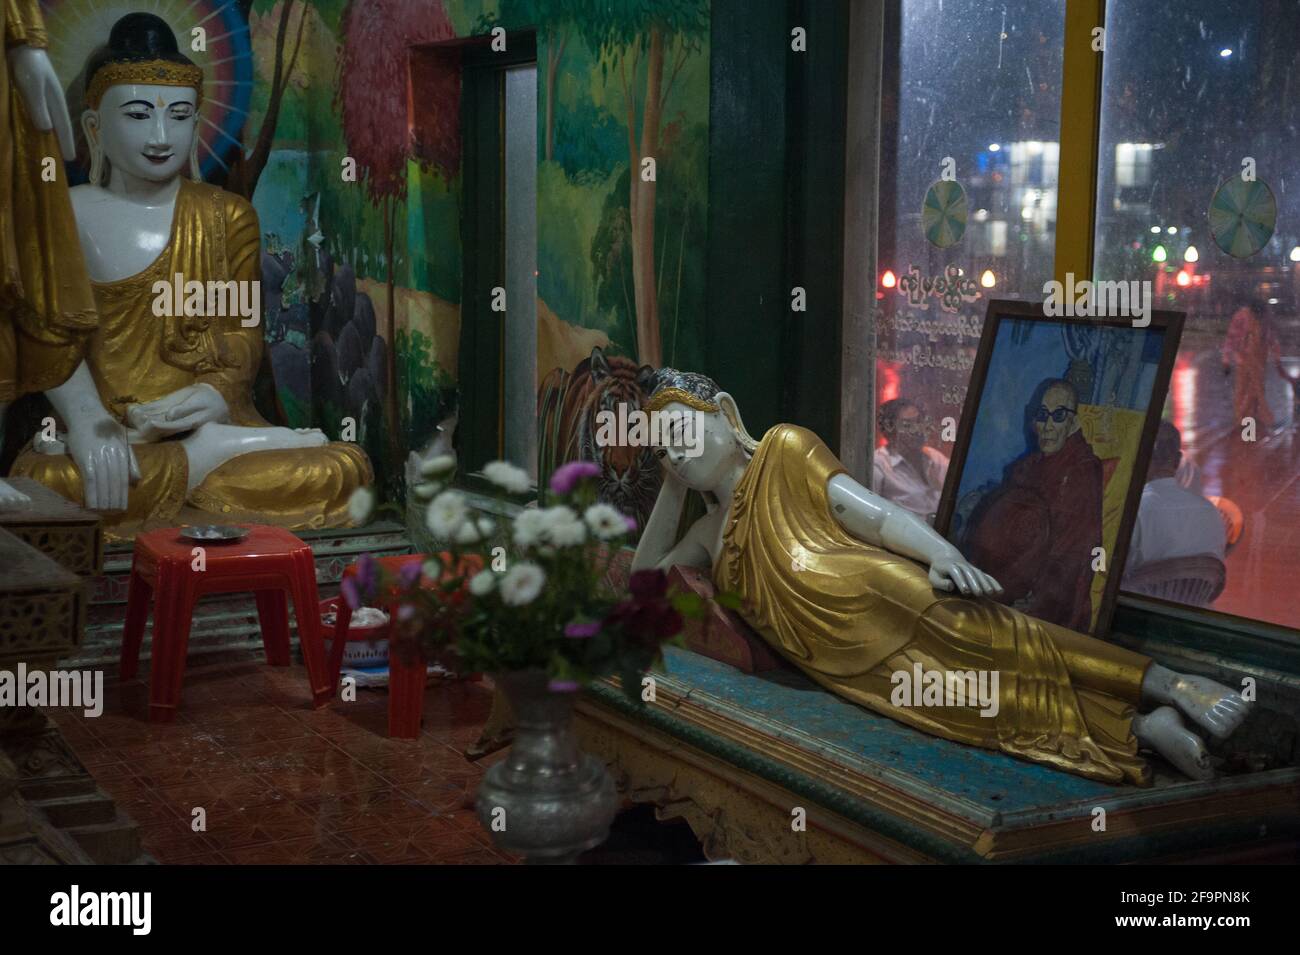 30.01.2017, Mawlamyine, Mon State, Myanmar - Buddha-Figuren in der Kyaikthanlan-Pagode, der höchsten buddhistischen Pagode der Stadt. 0SL170130D054CAROEX.JPG [ Stockfoto